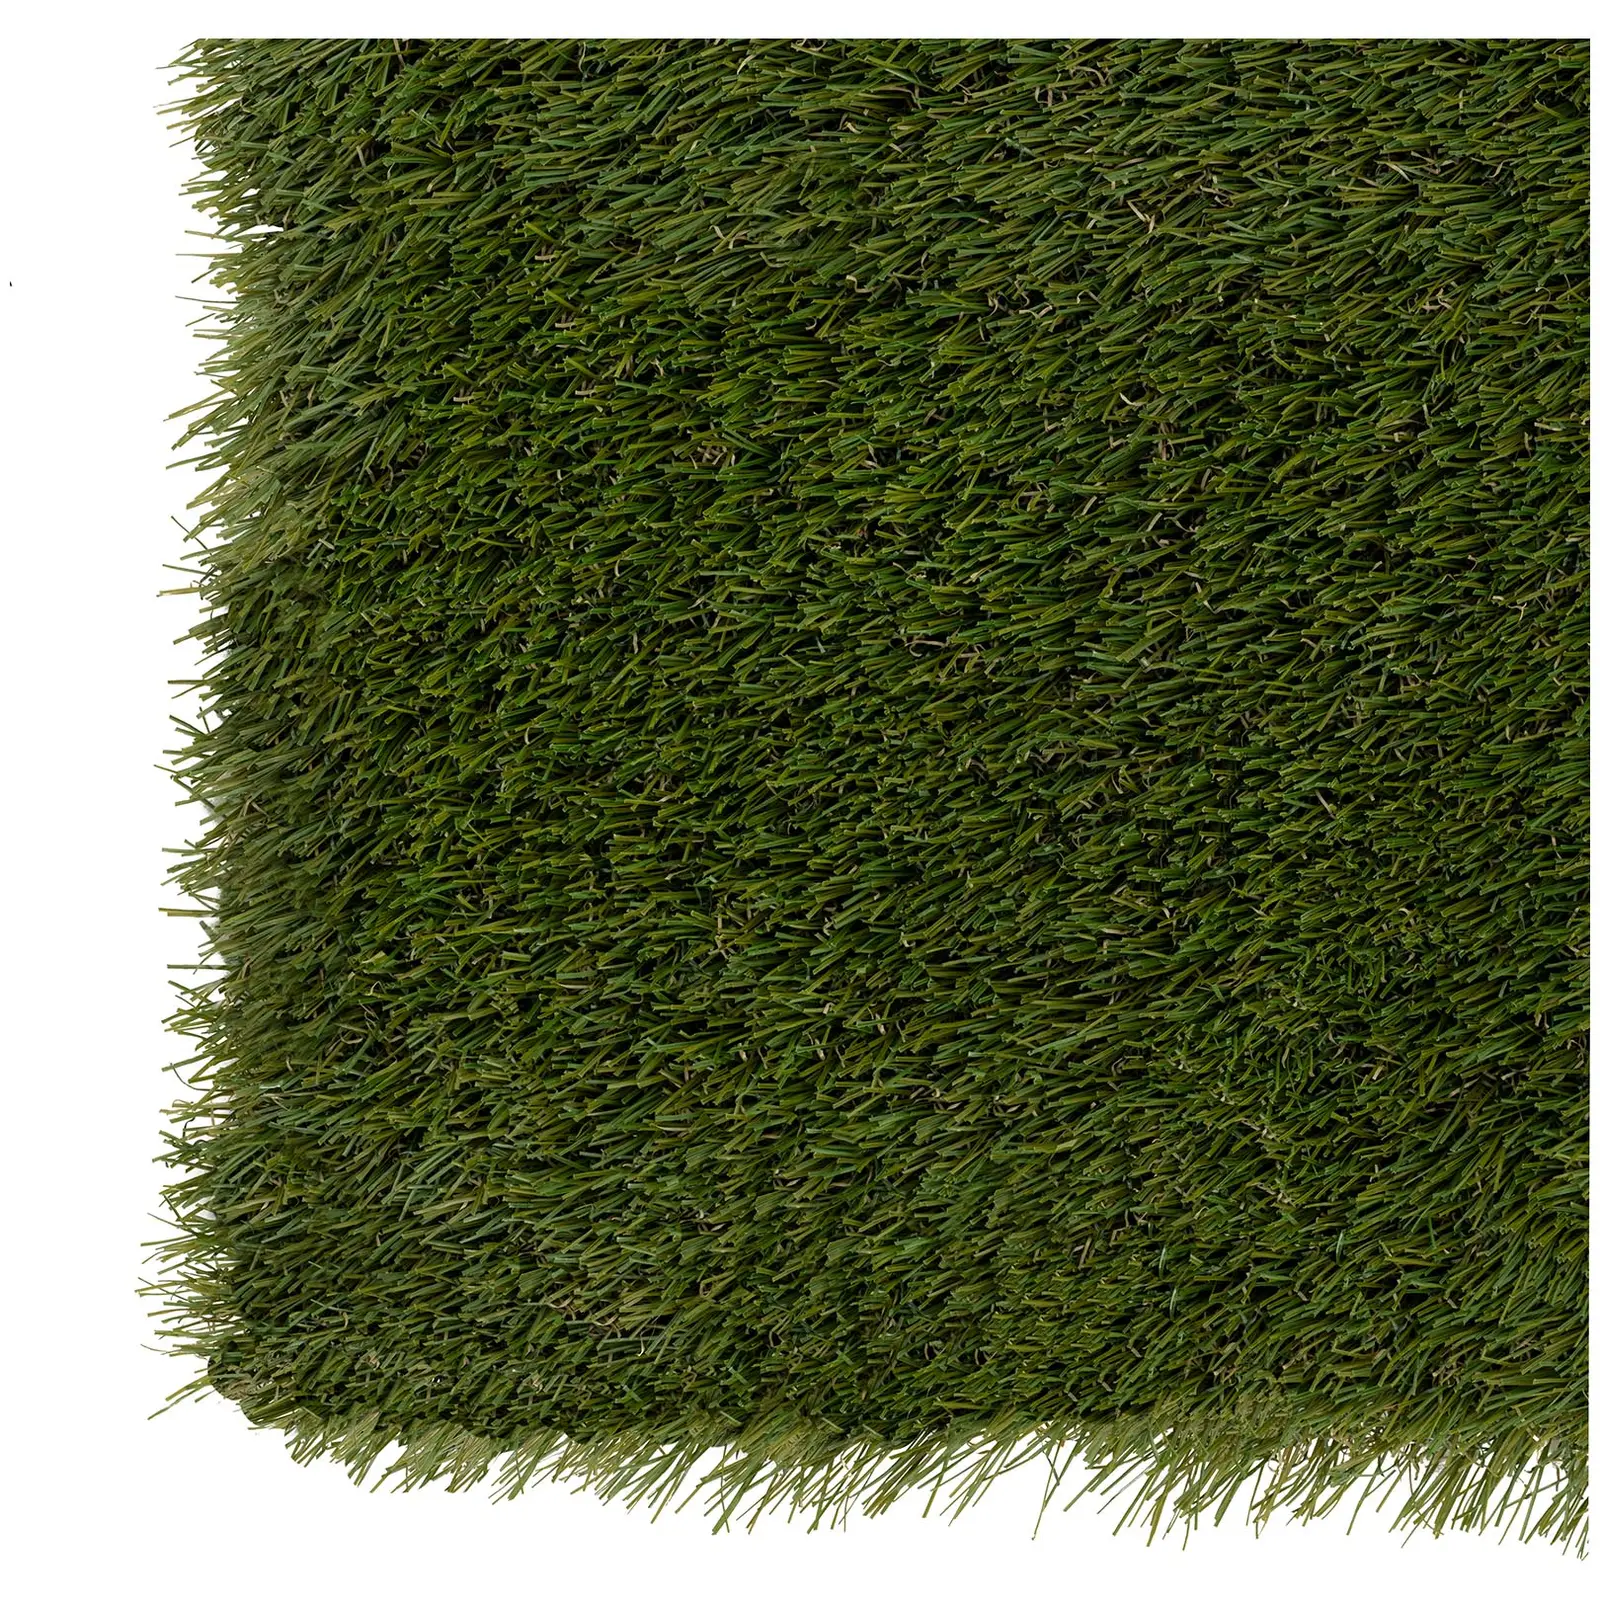 Umelý trávnik - 403 x 200 cm - výška: 30 mm - hustota stehu: 20/10 cm - odolný proti UV žiareniu